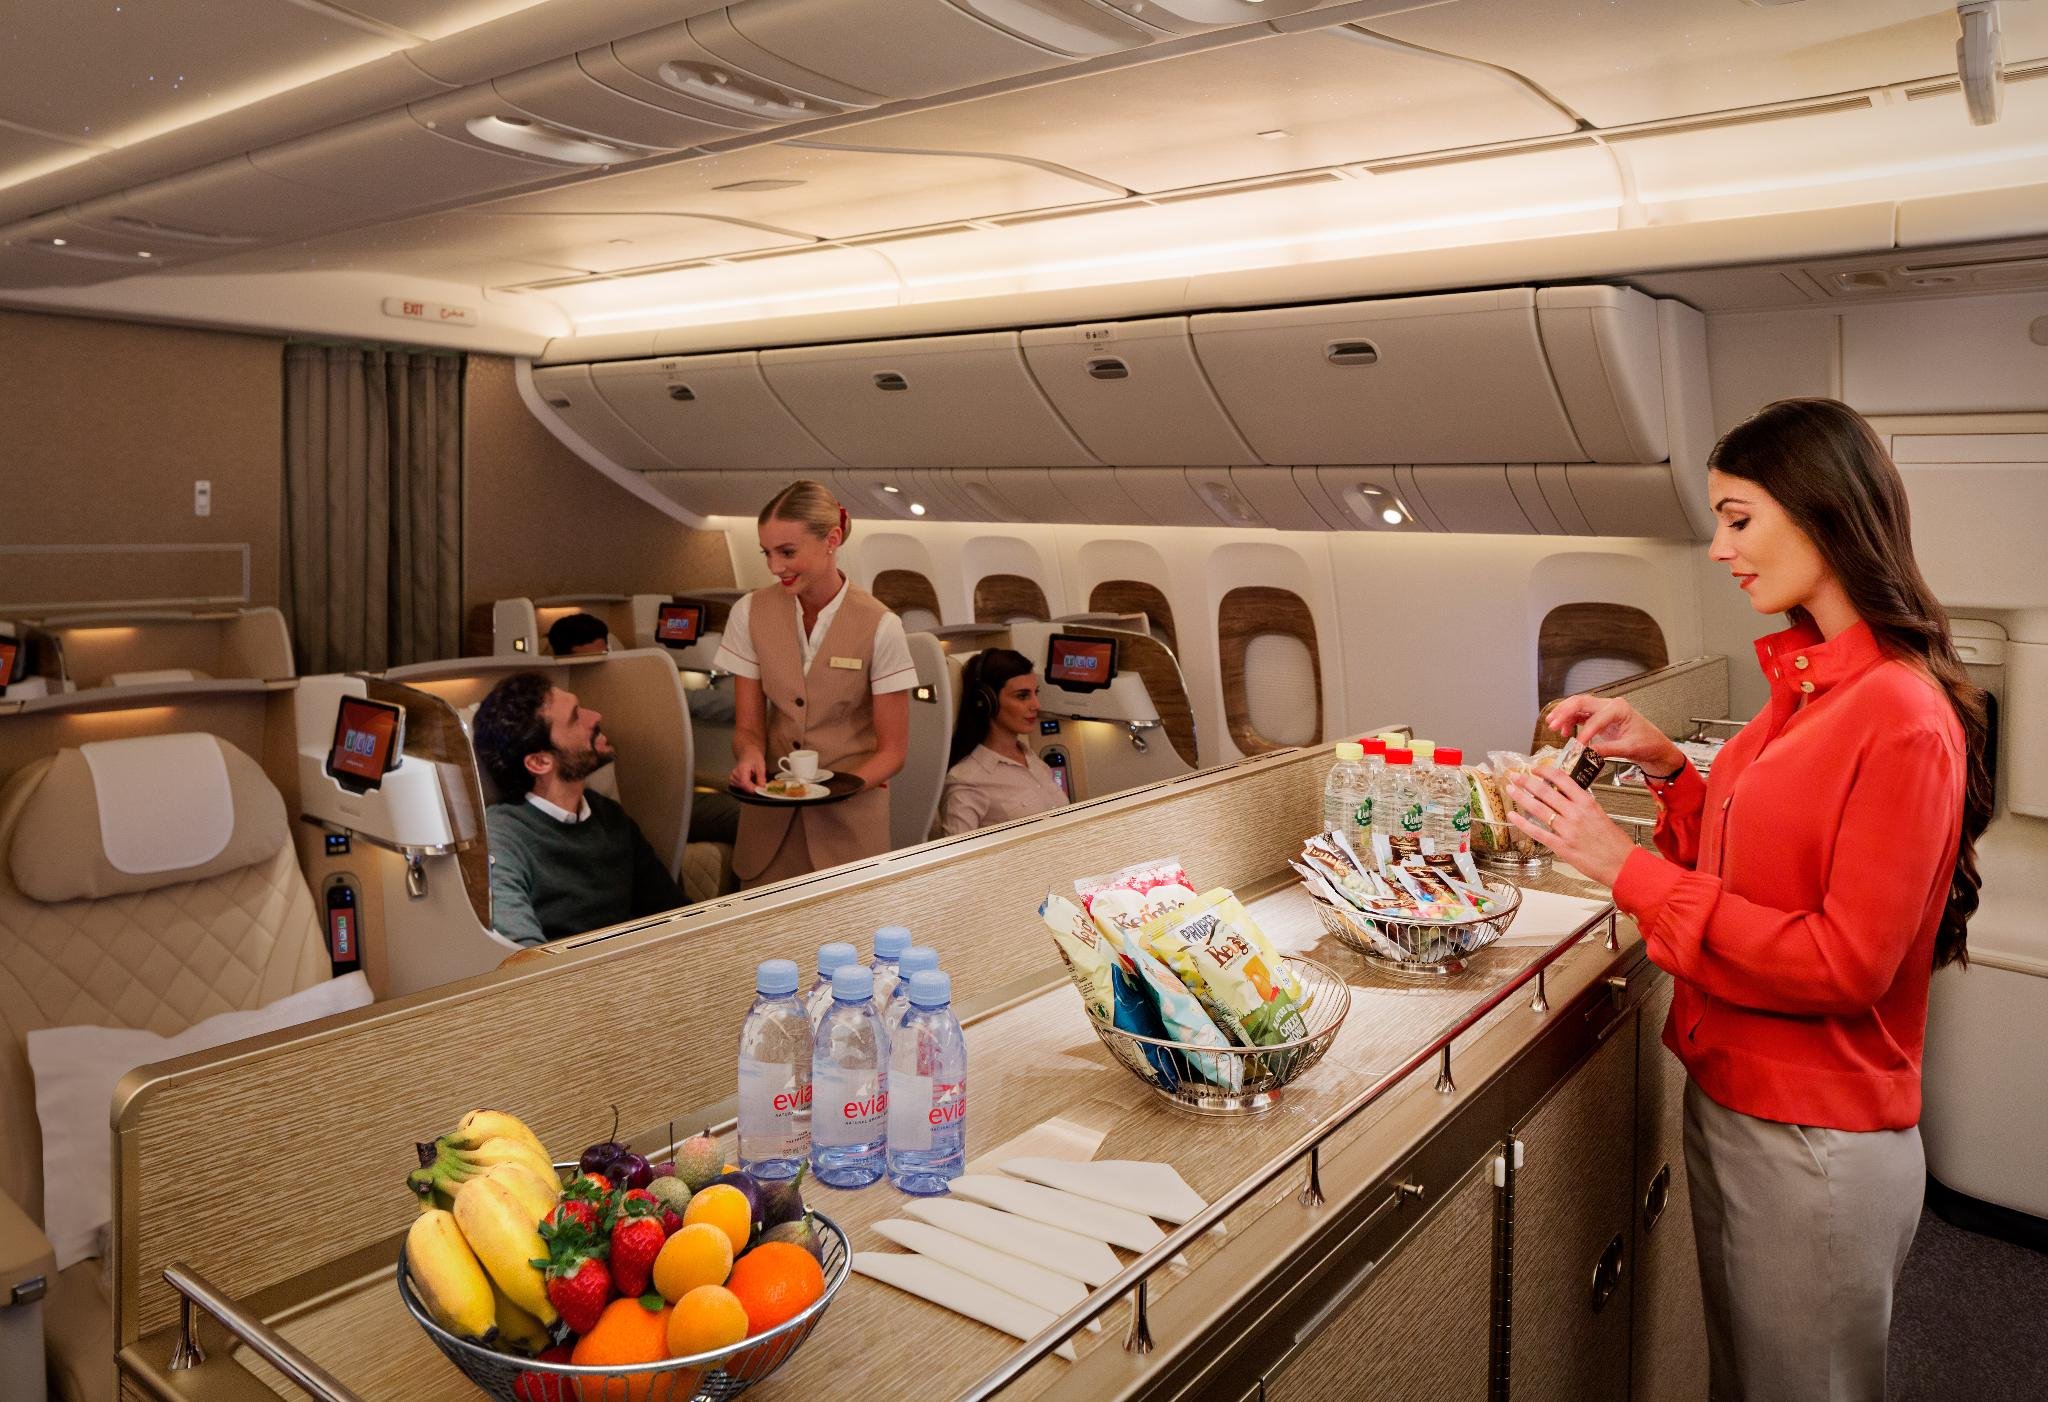 Сайт эмирейтс. Боинг 777 Эмирейтс салон. Эмирейтс авиалинии самолеты. Boeing 777 Emirates салон. Боинг 777 Эмирейтс салон эконом класса.